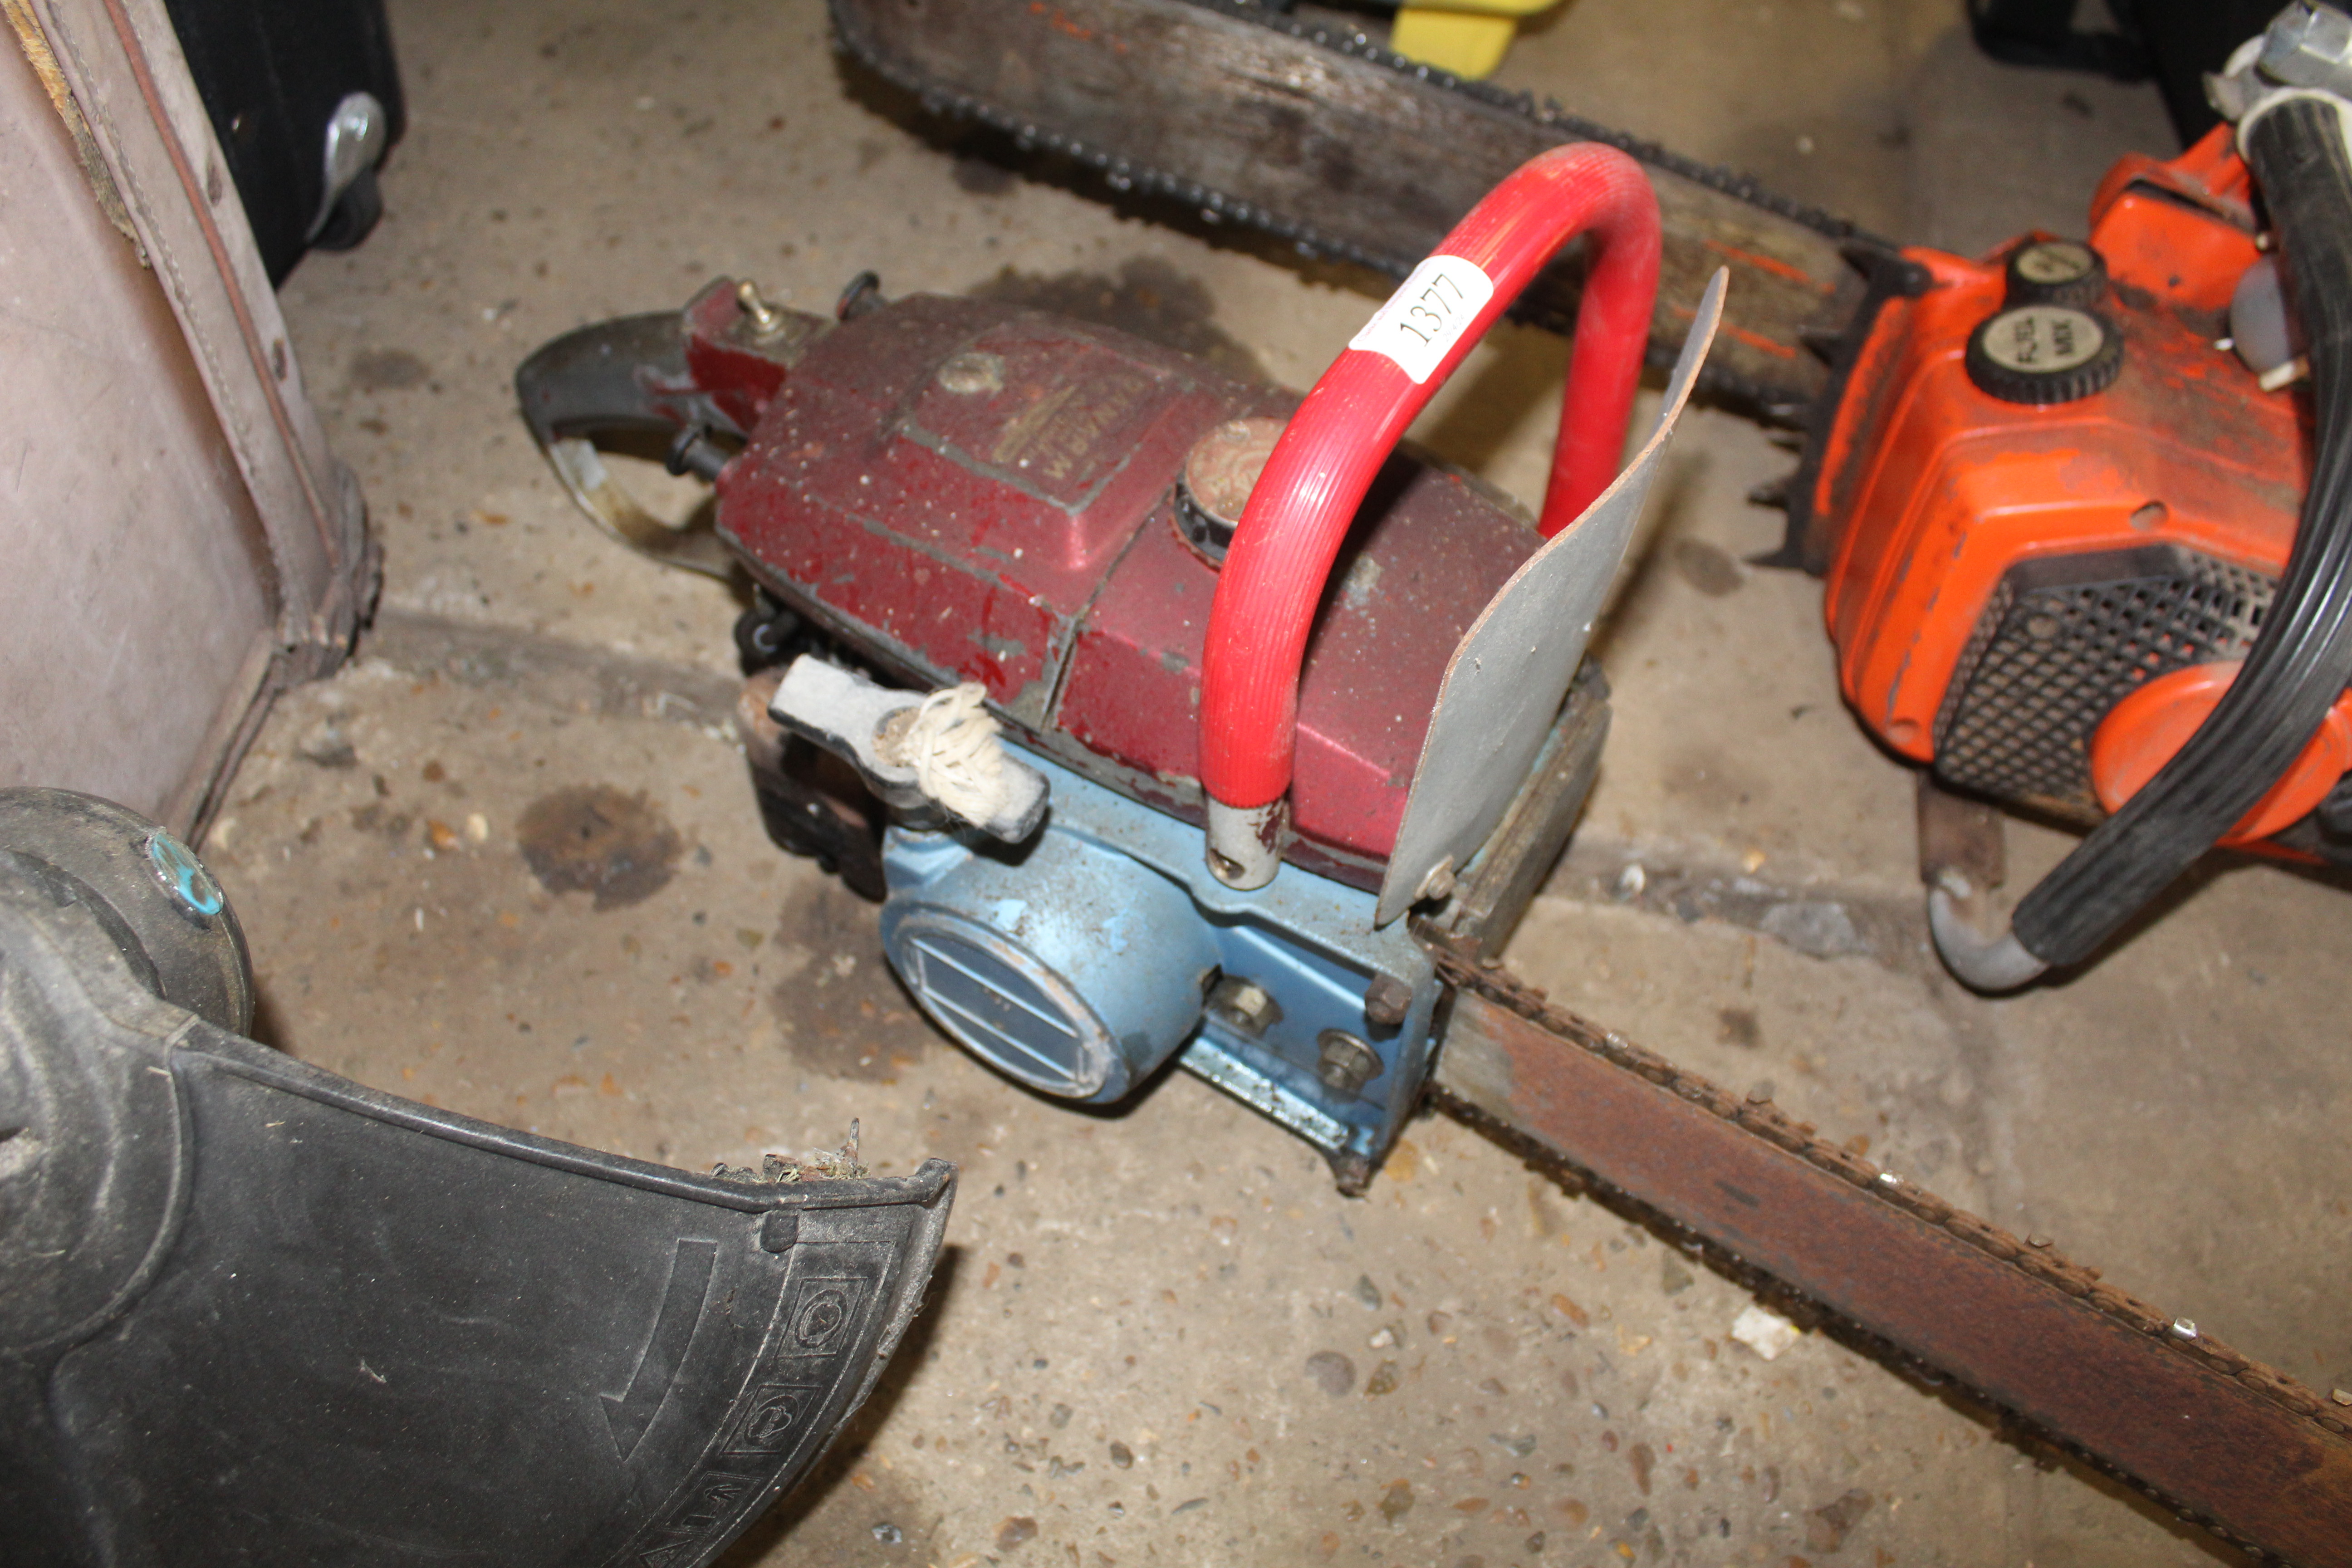 A Danarm petrol chainsaw - Image 3 of 3